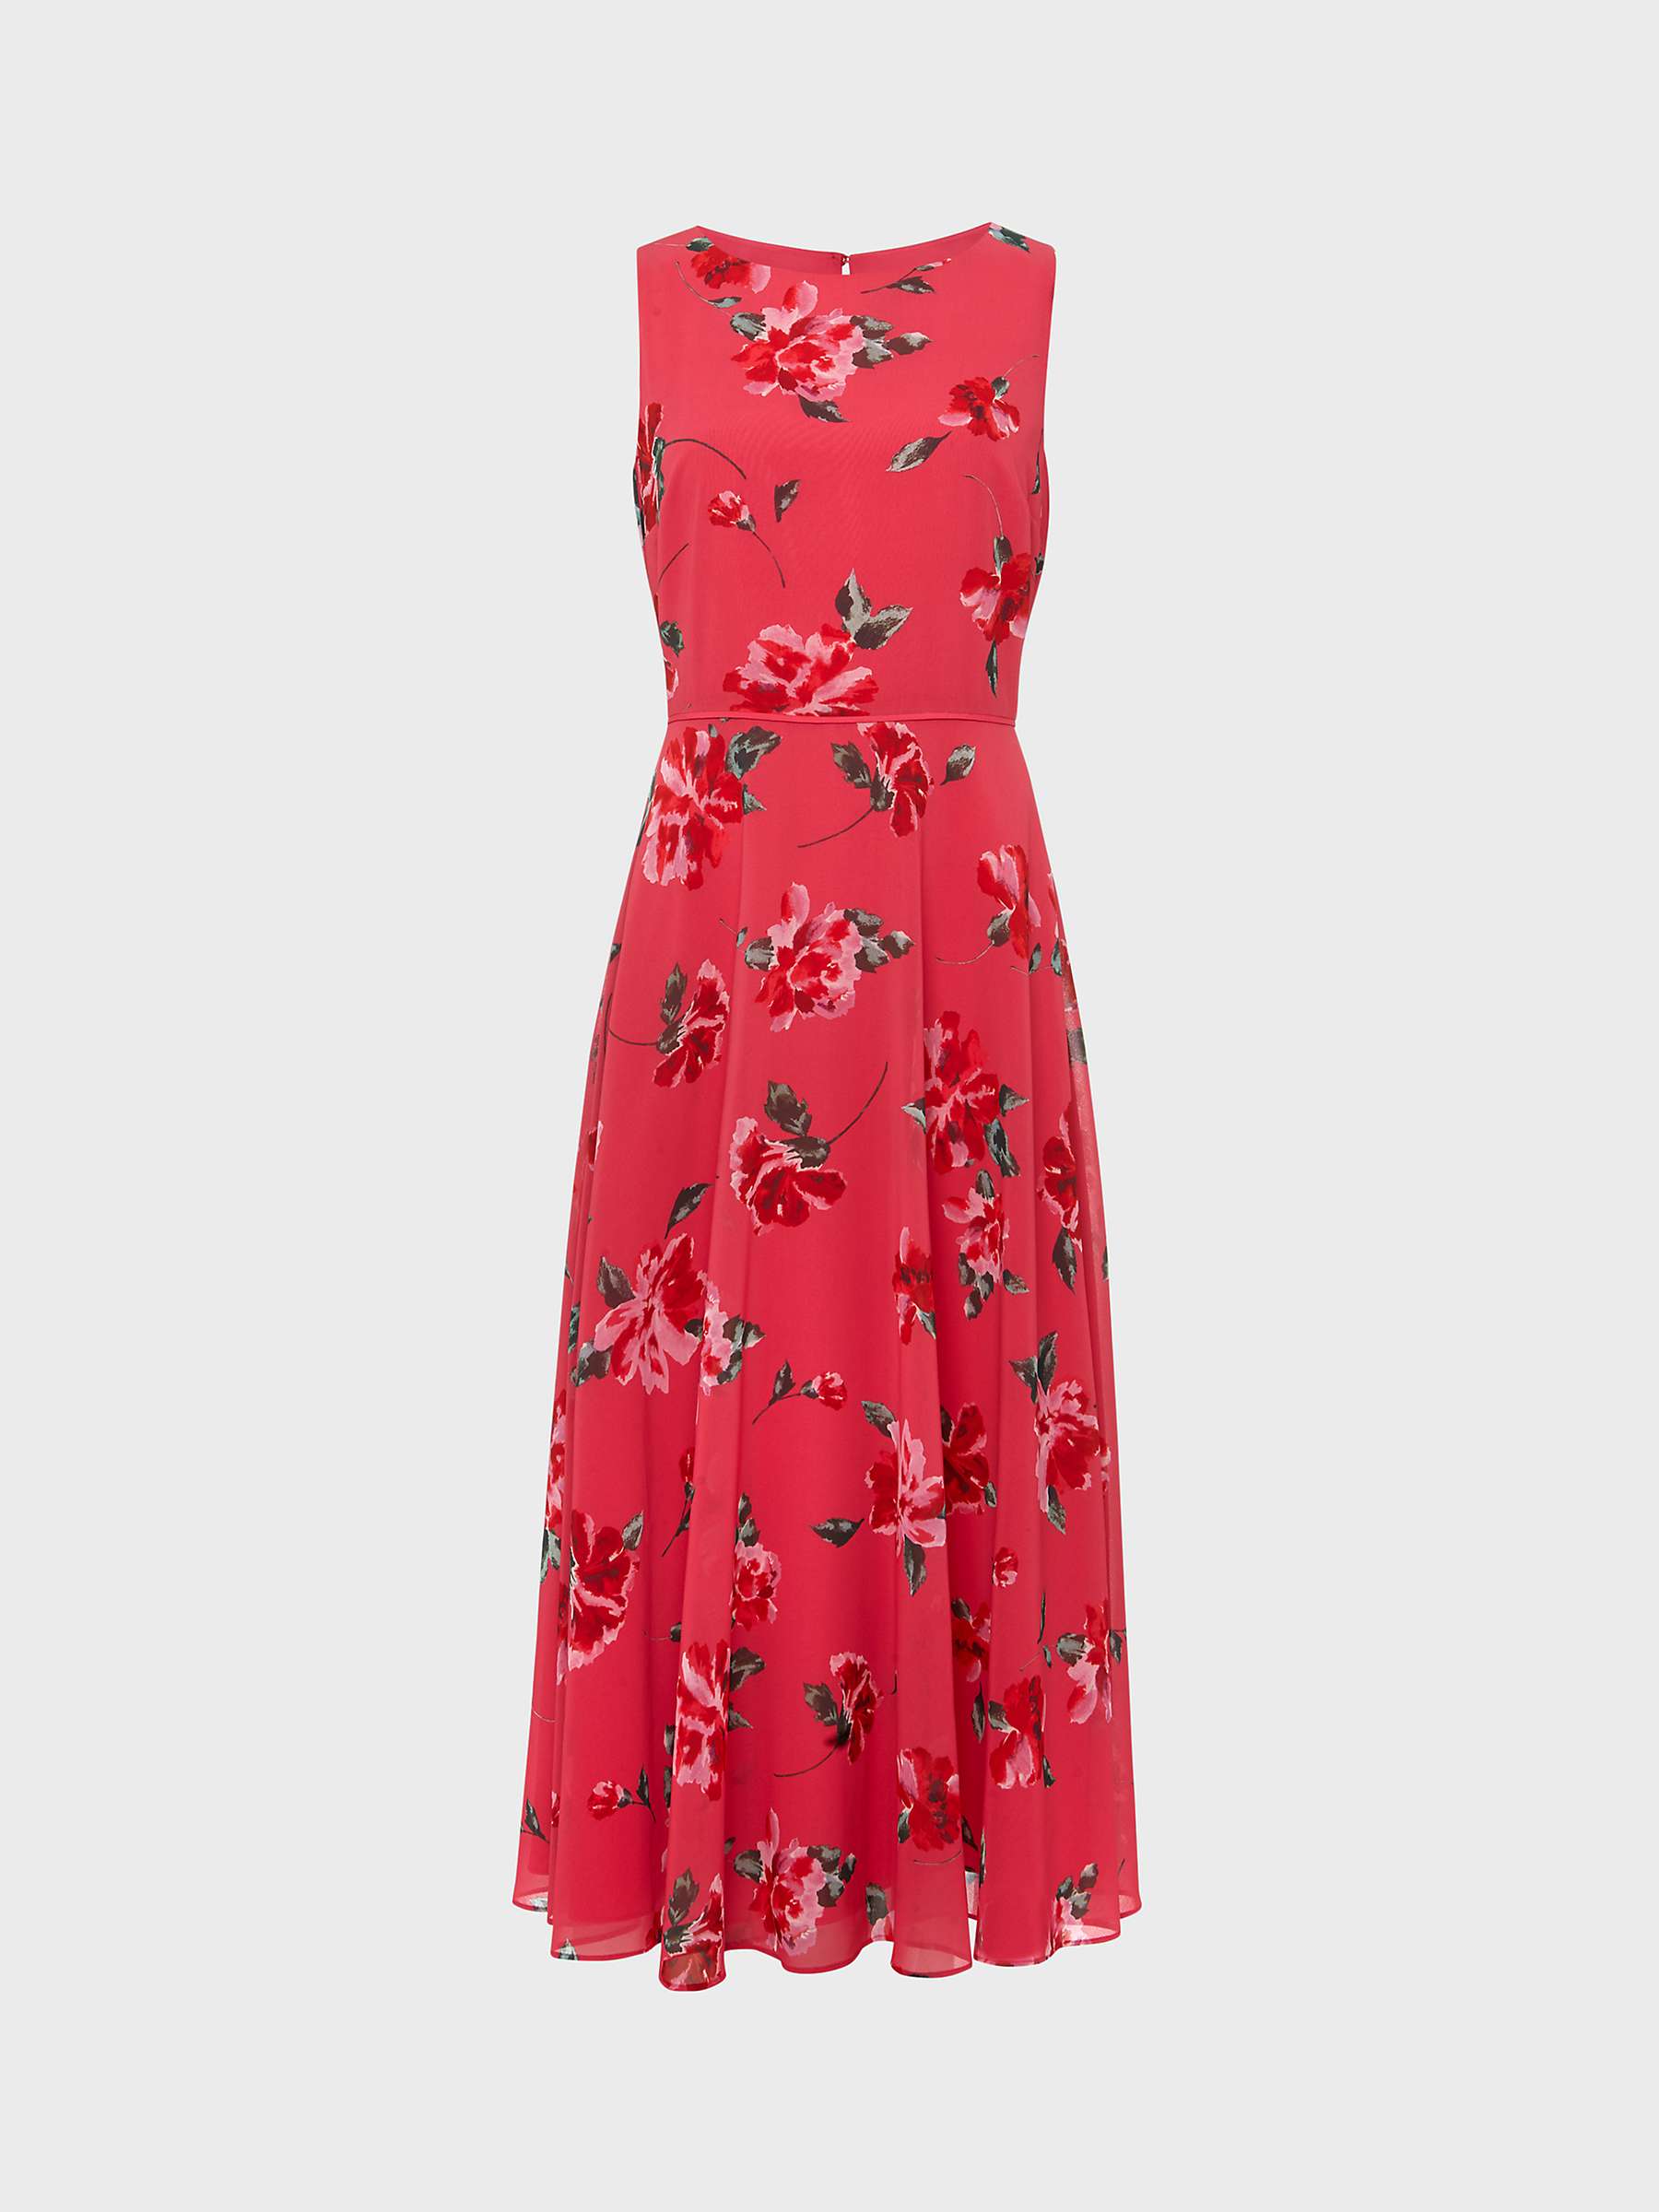 Hobbs Petite Carly Floral Print Midi Dress, Pink/Red/Multi at John ...